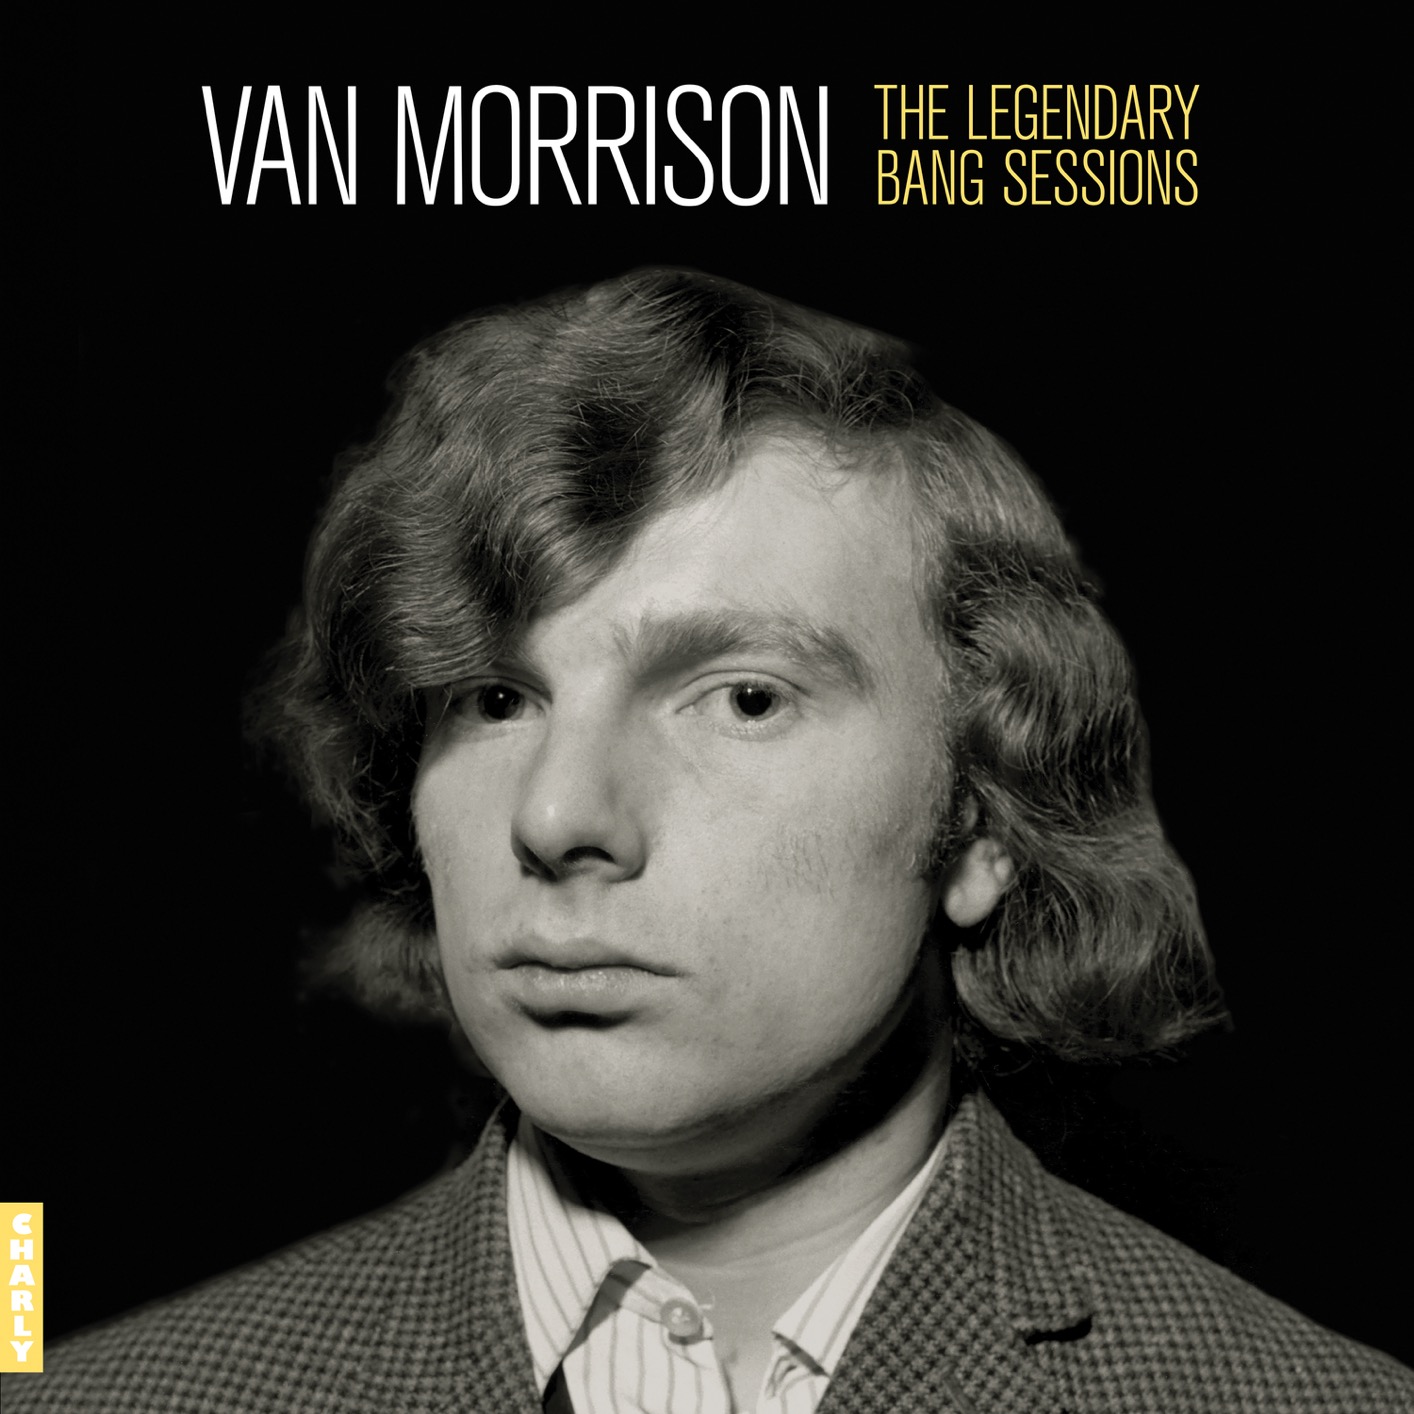 Versatile: How Van Morrison Got Back In The Swing With Jazz